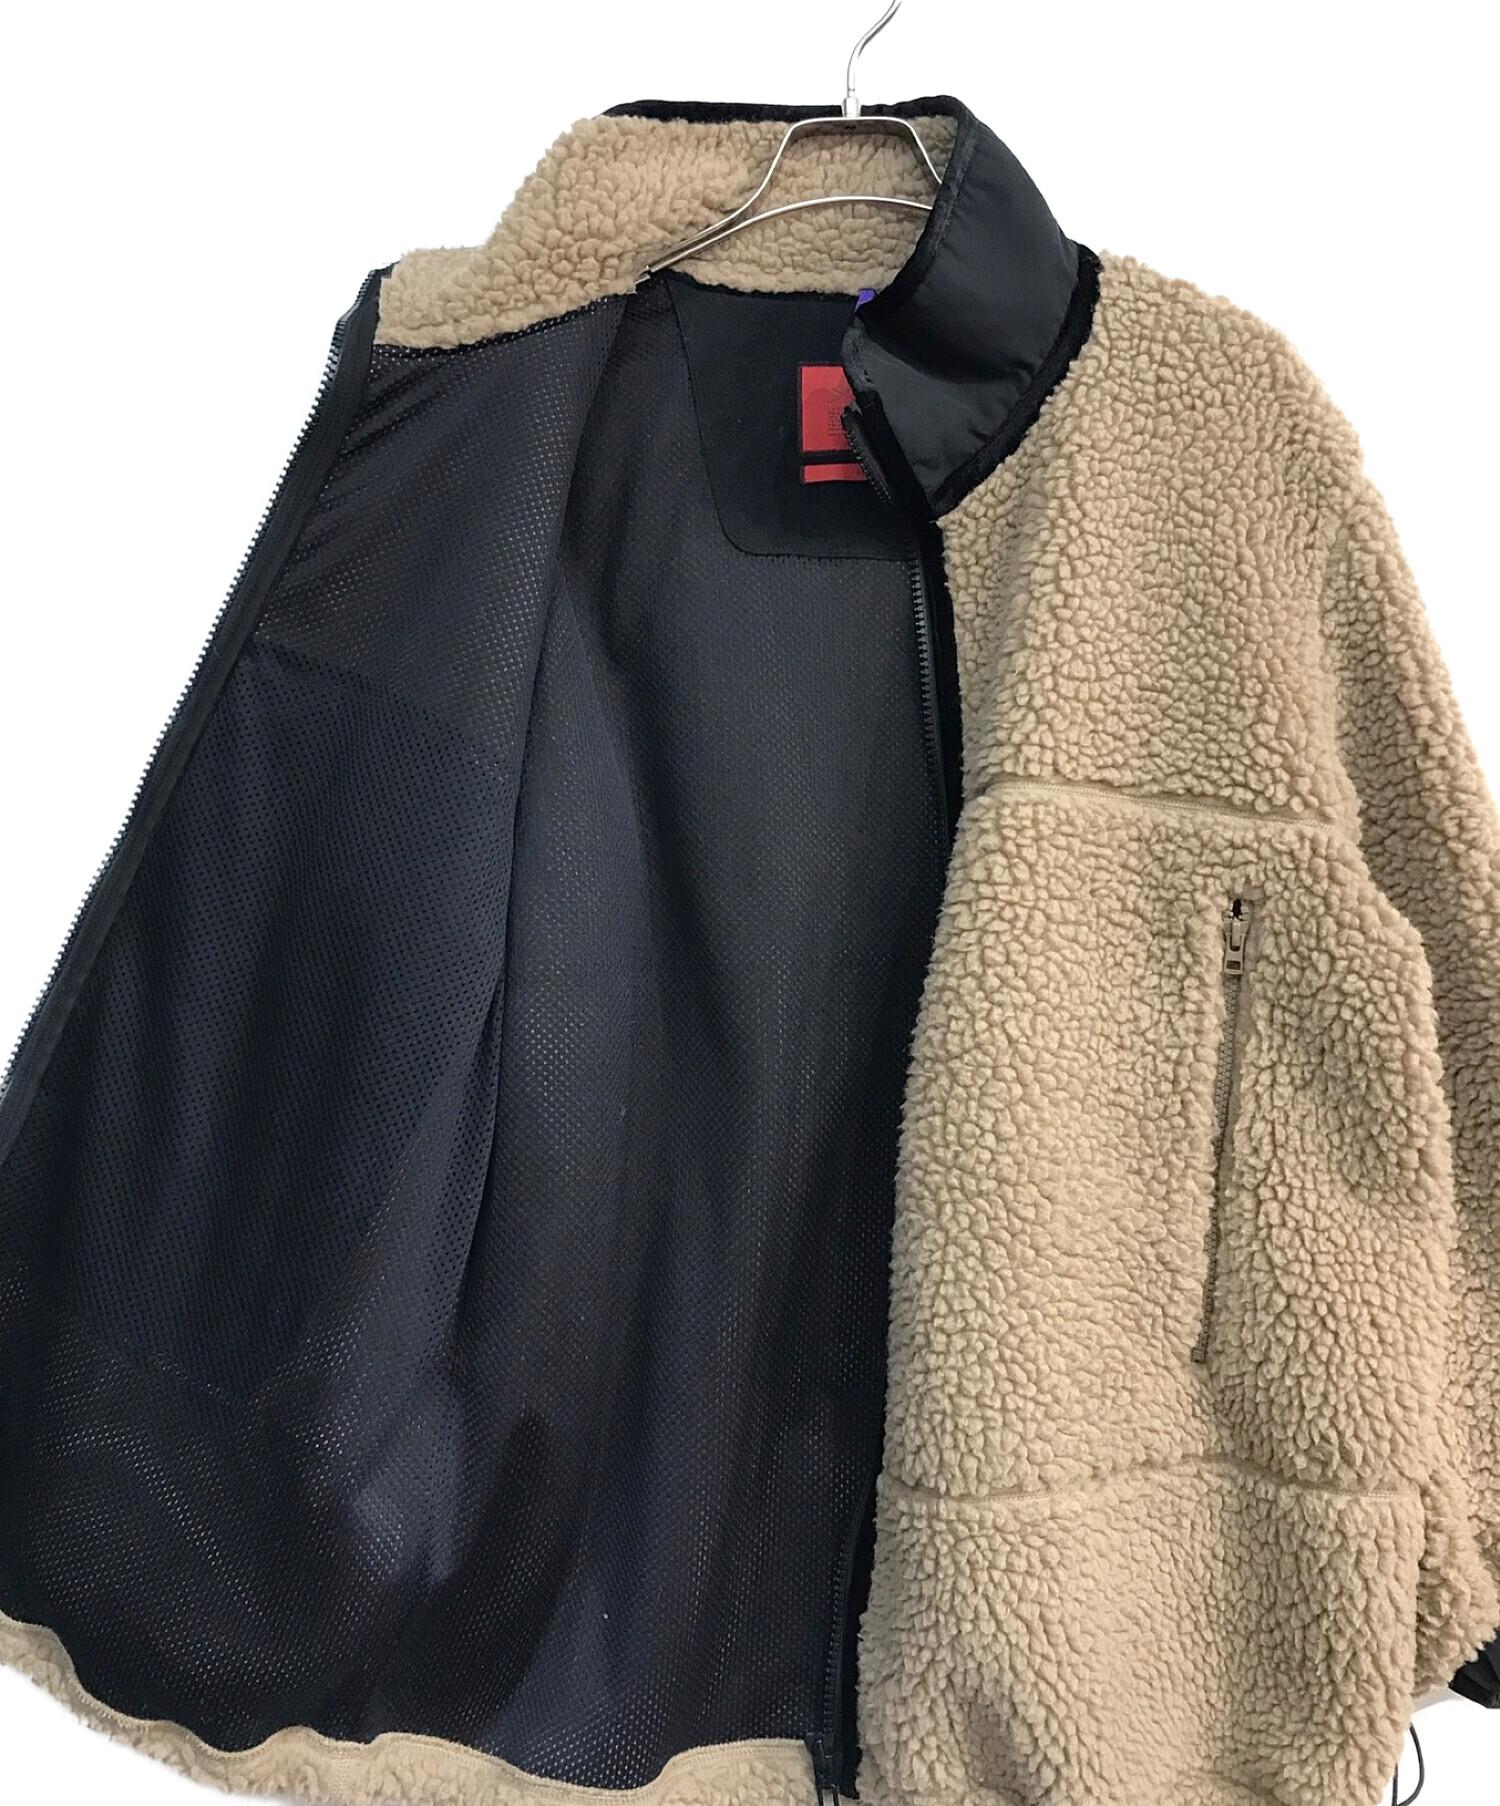 Yeti Black Fur Coat – Gel·bert